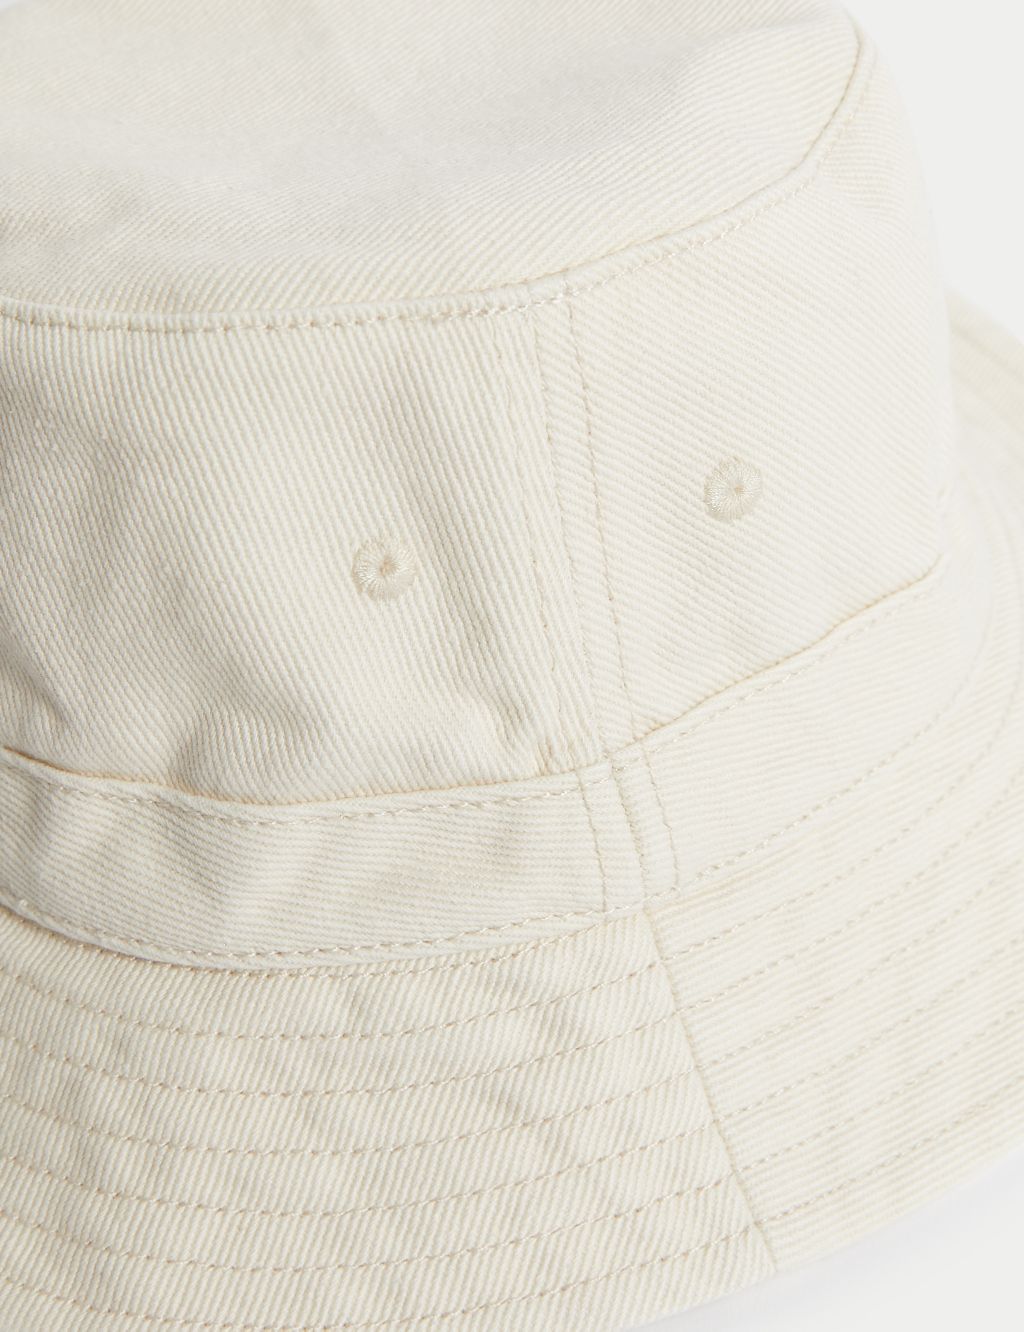 Kids' Pure Cotton Plain Sun Hat (1-13 Yrs) image 3